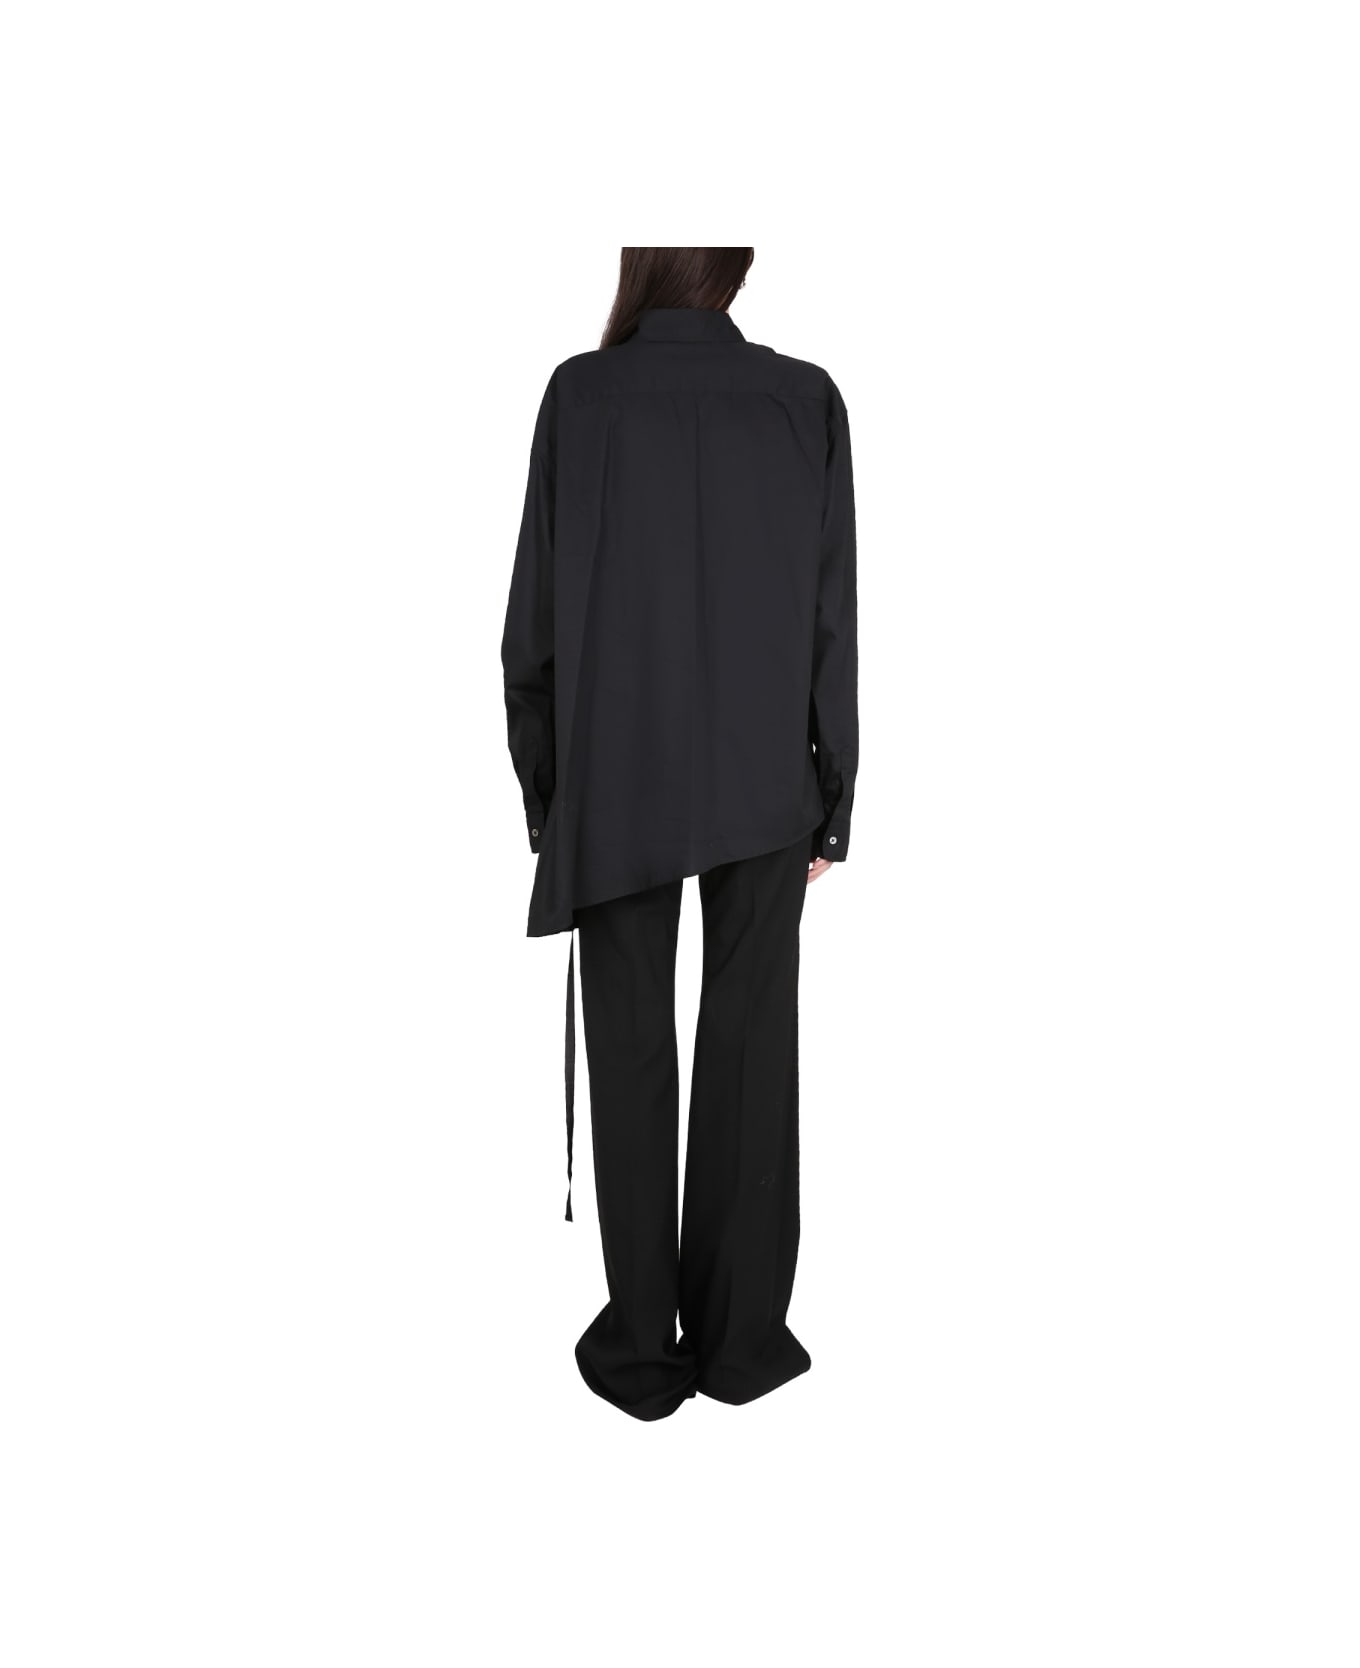 Ann Demeulemeester Asymmetrical Shirt - BLACK